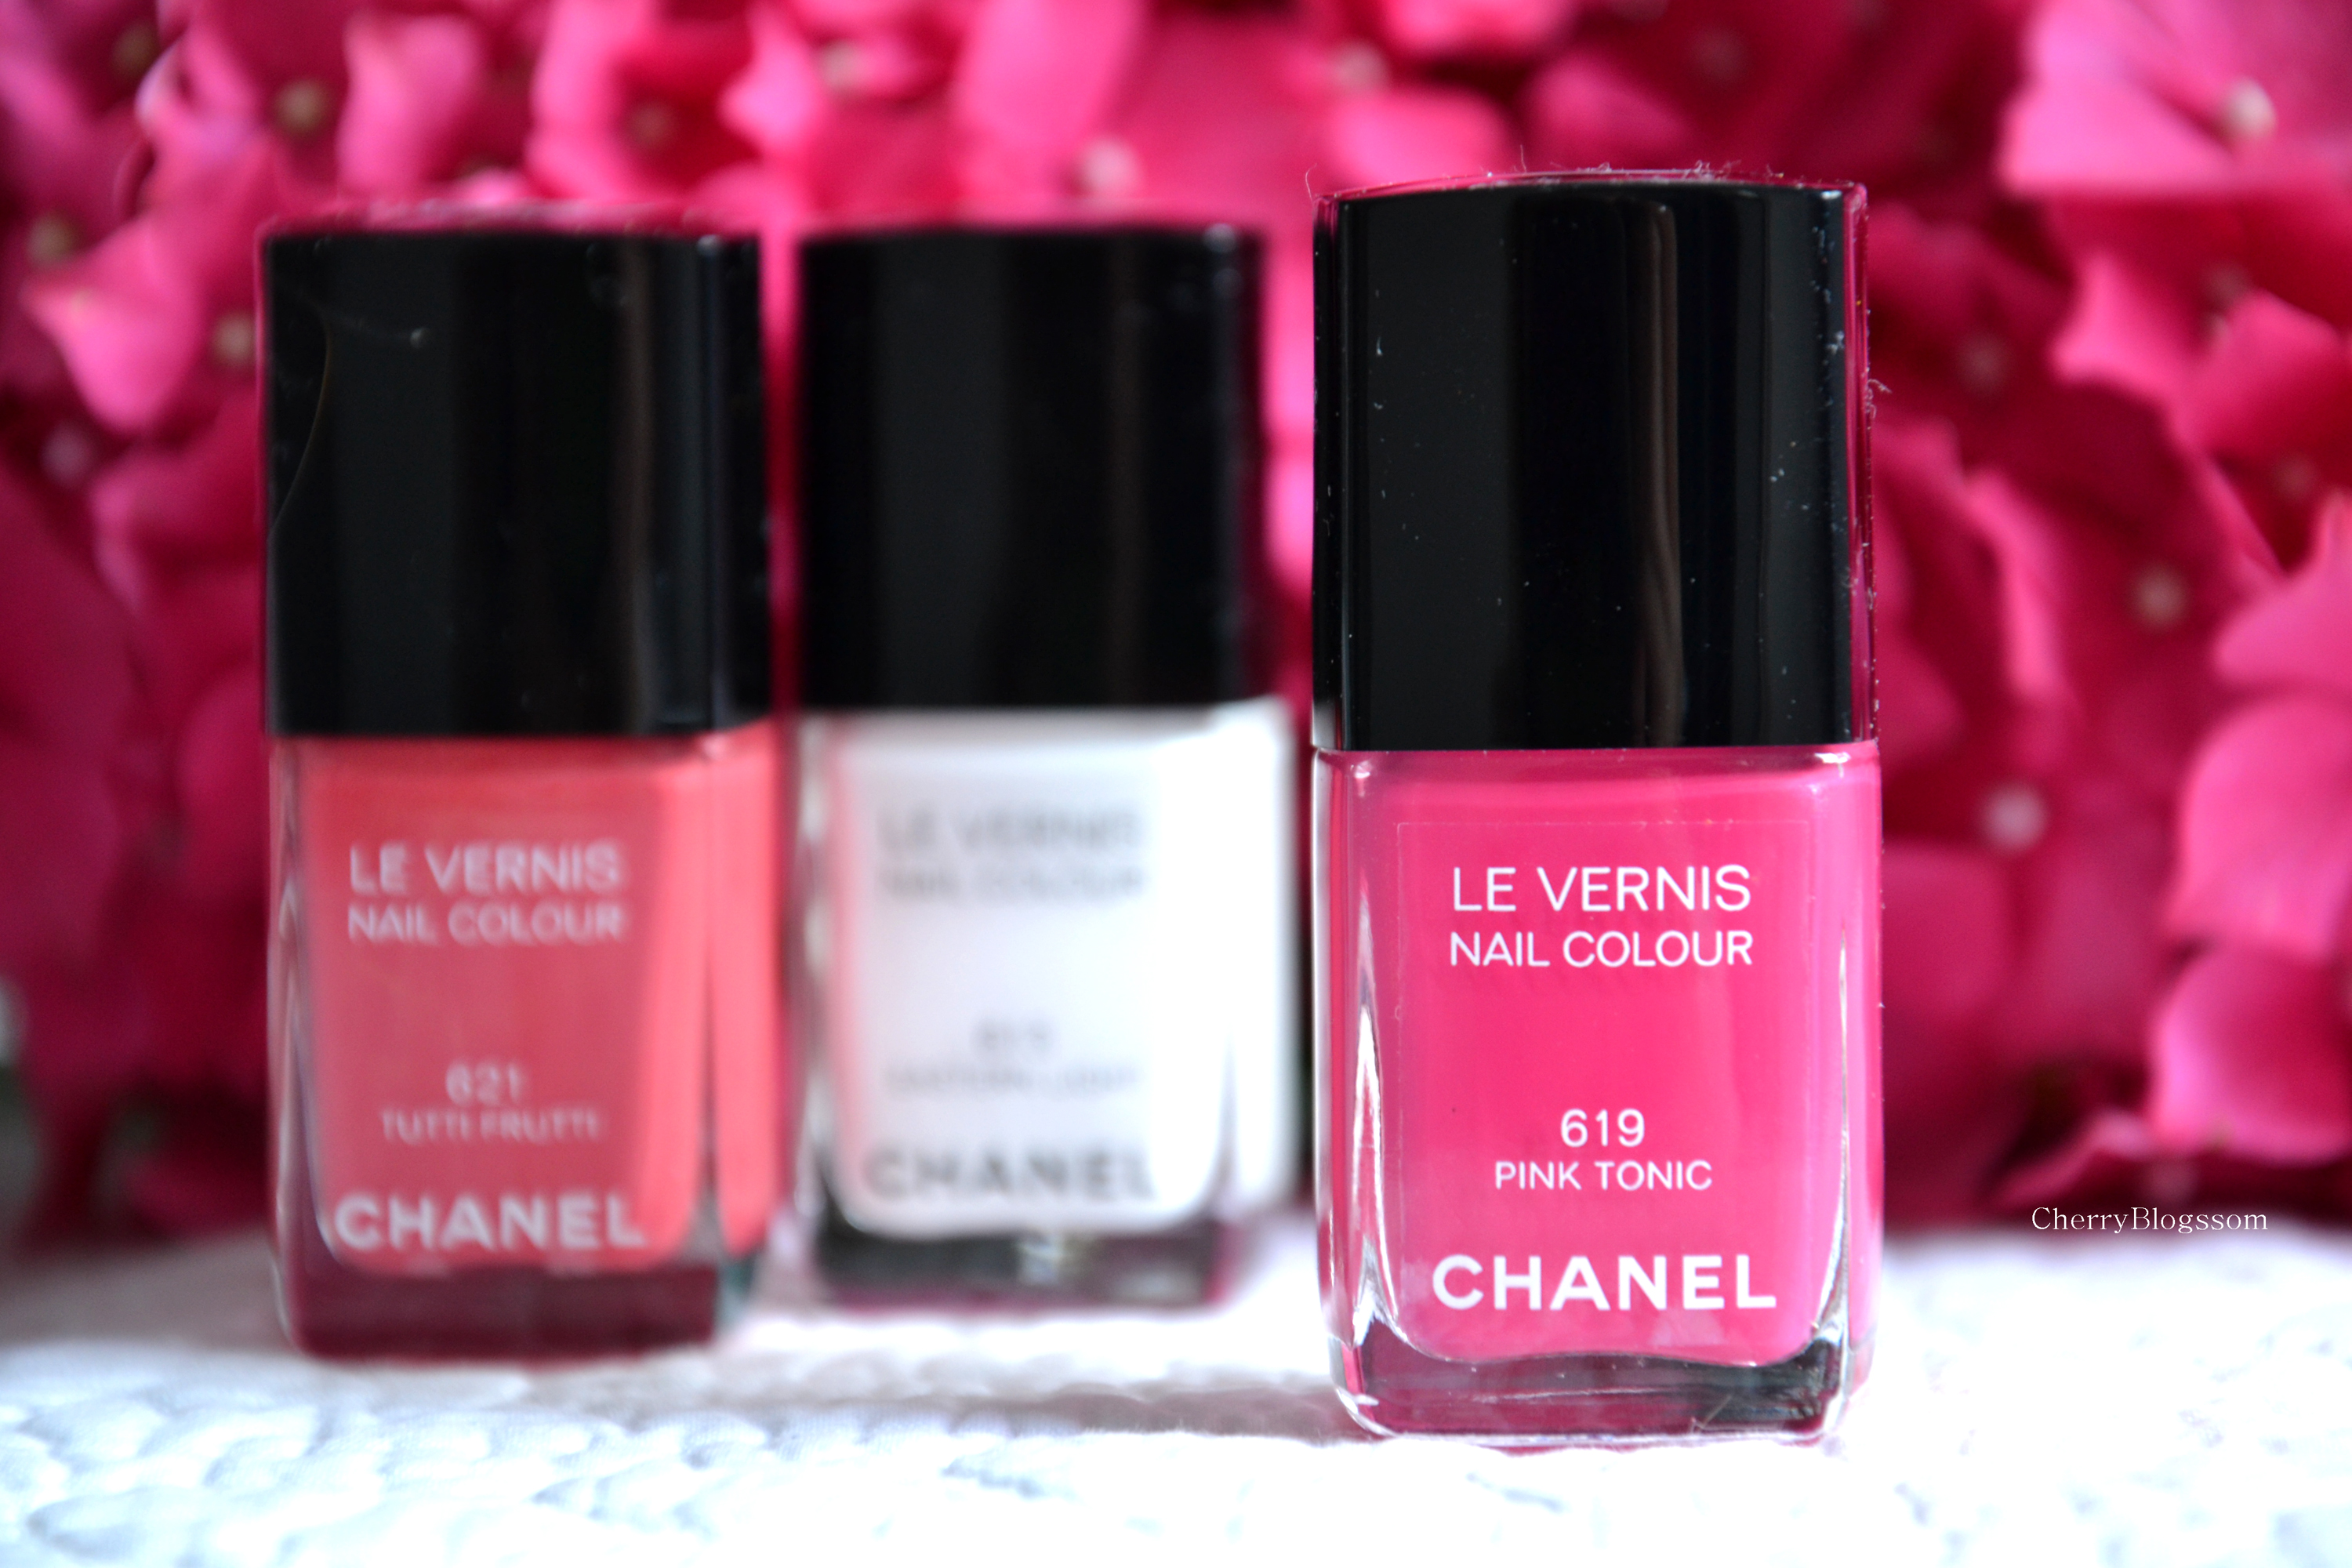 Des ongles lumineux, colorés et pétillants avec Chanel - CherryBlossom